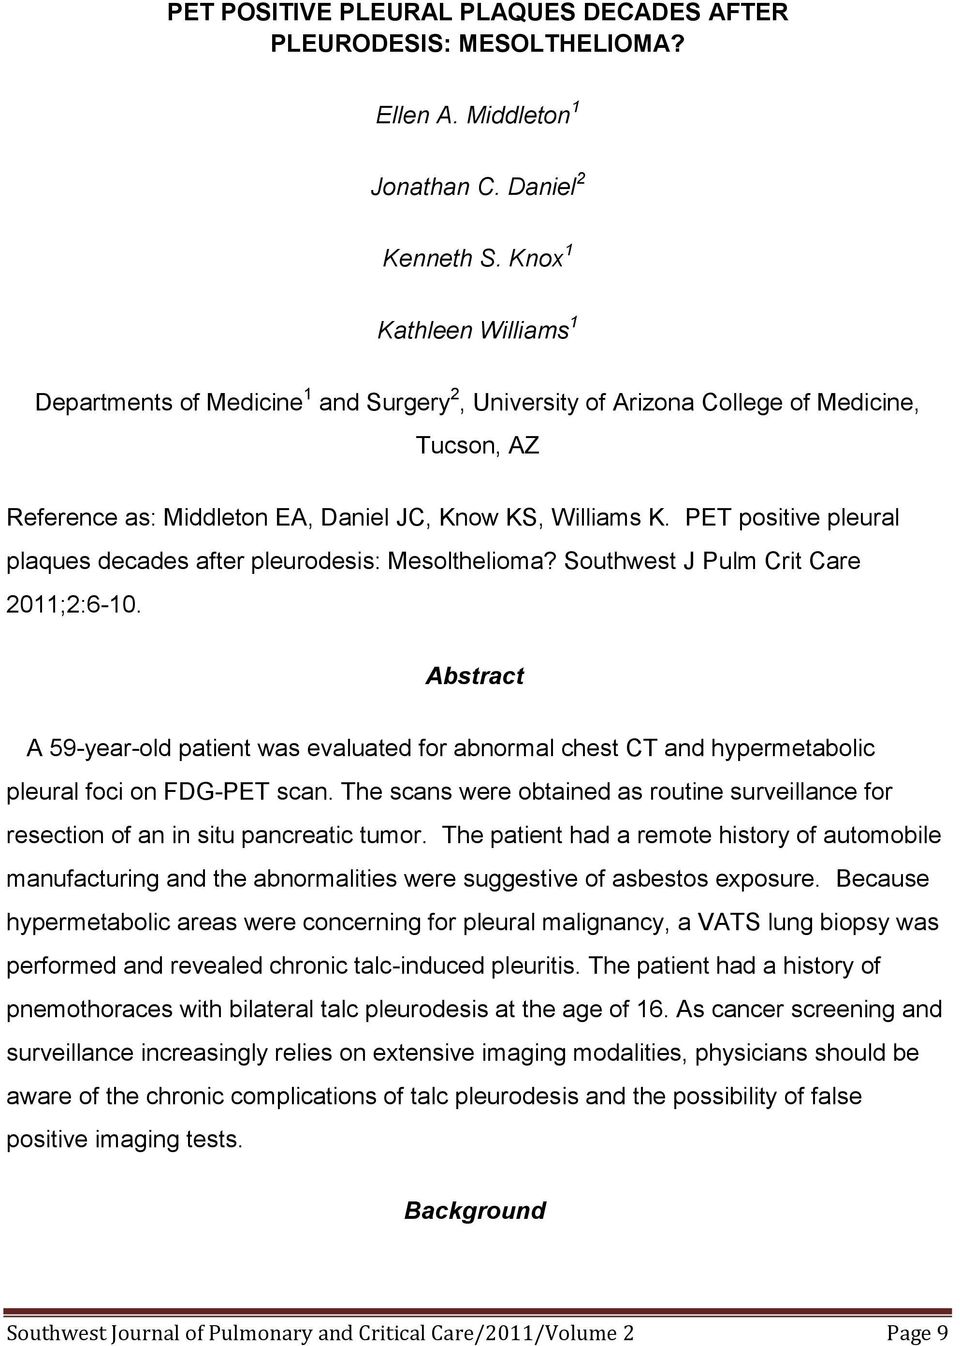 PET positive pleural plaques decades after pleurodesis: Mesolthelioma? Southwest J Pulm Crit Care 2011;2:6-10.